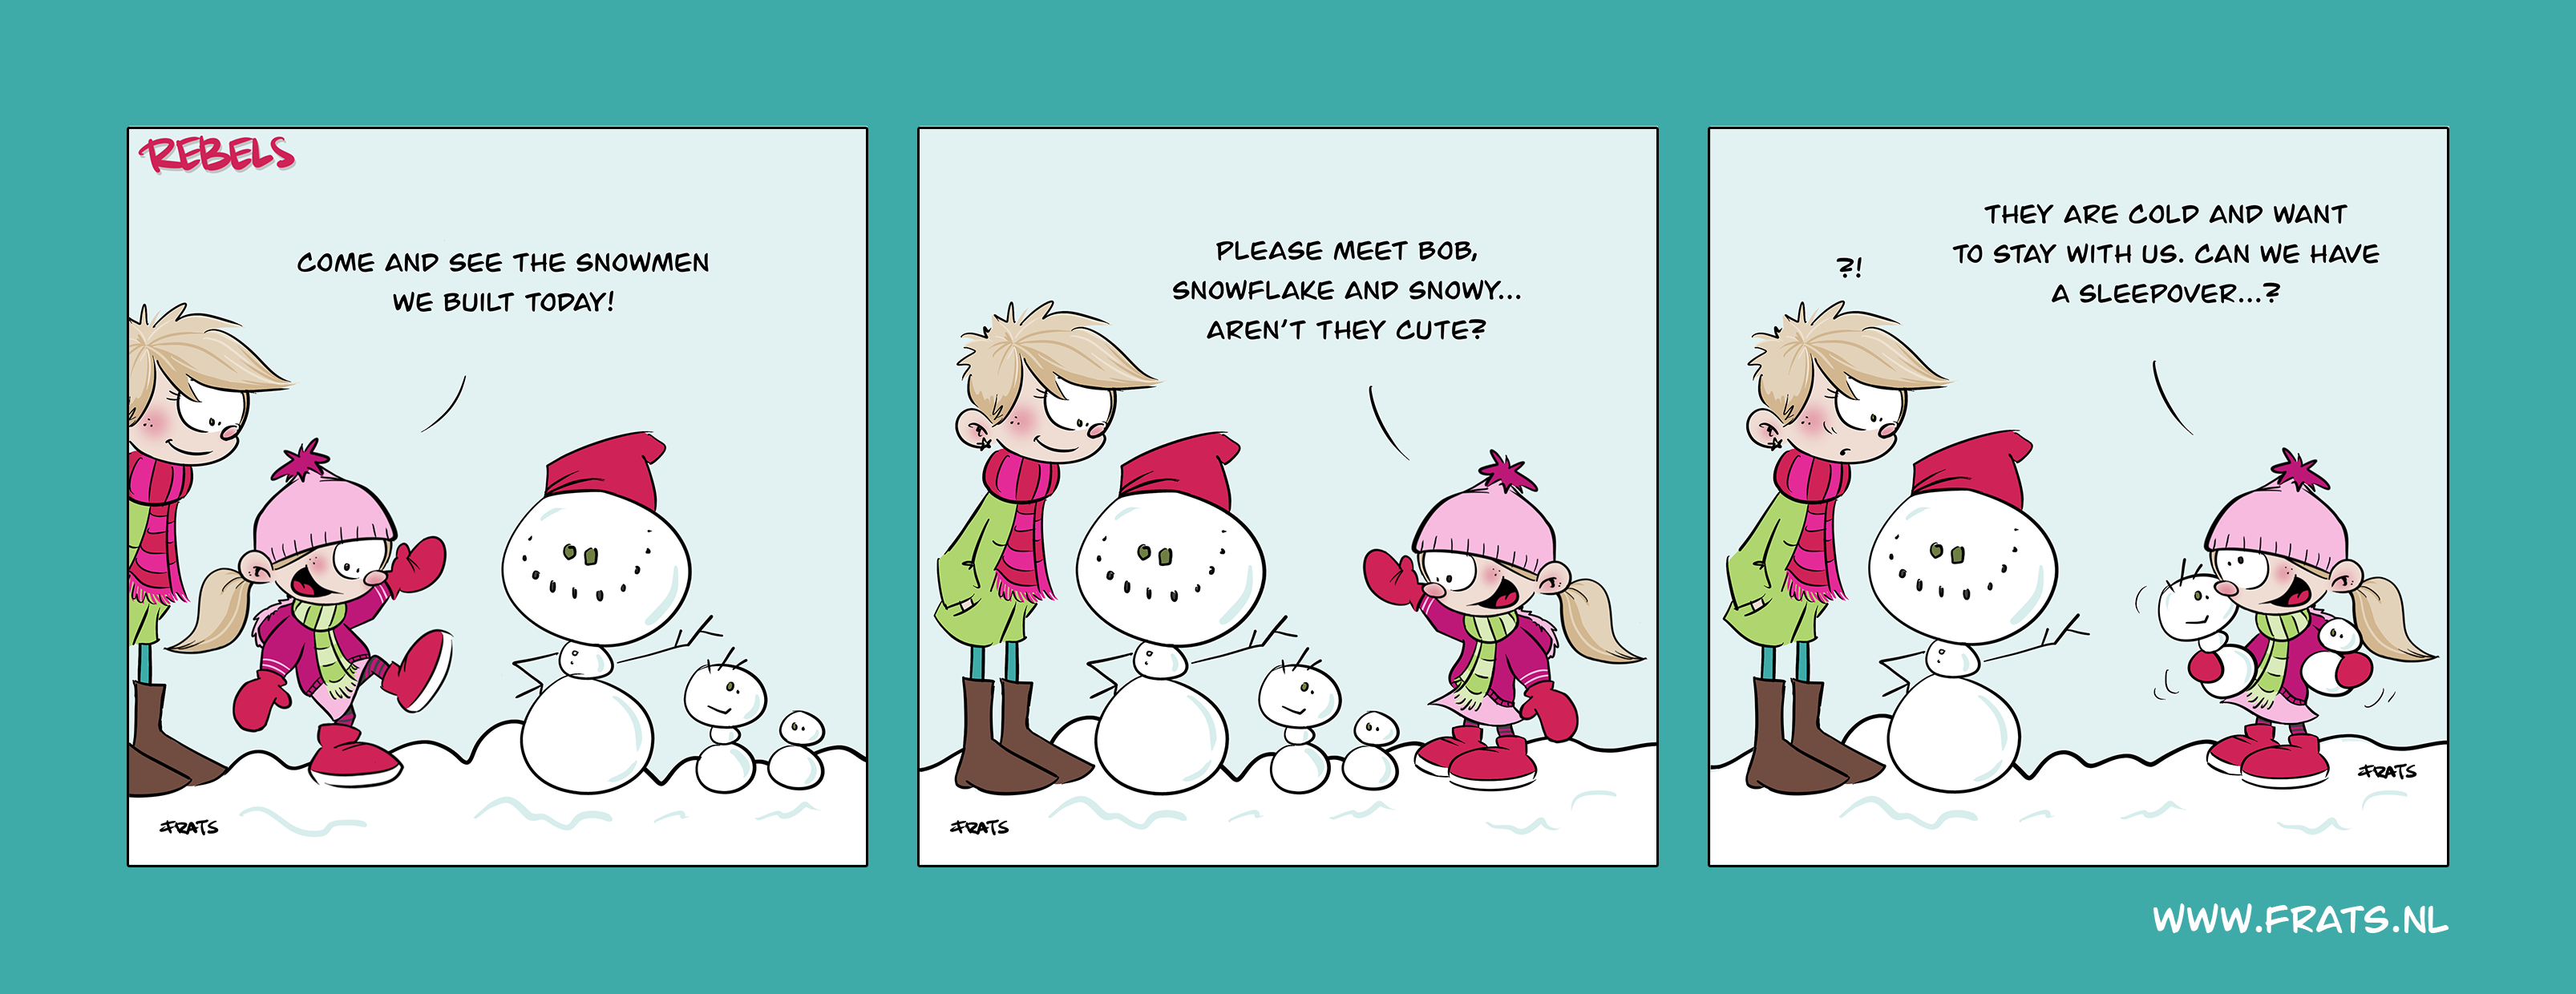 Rebels comic strip about snowmen